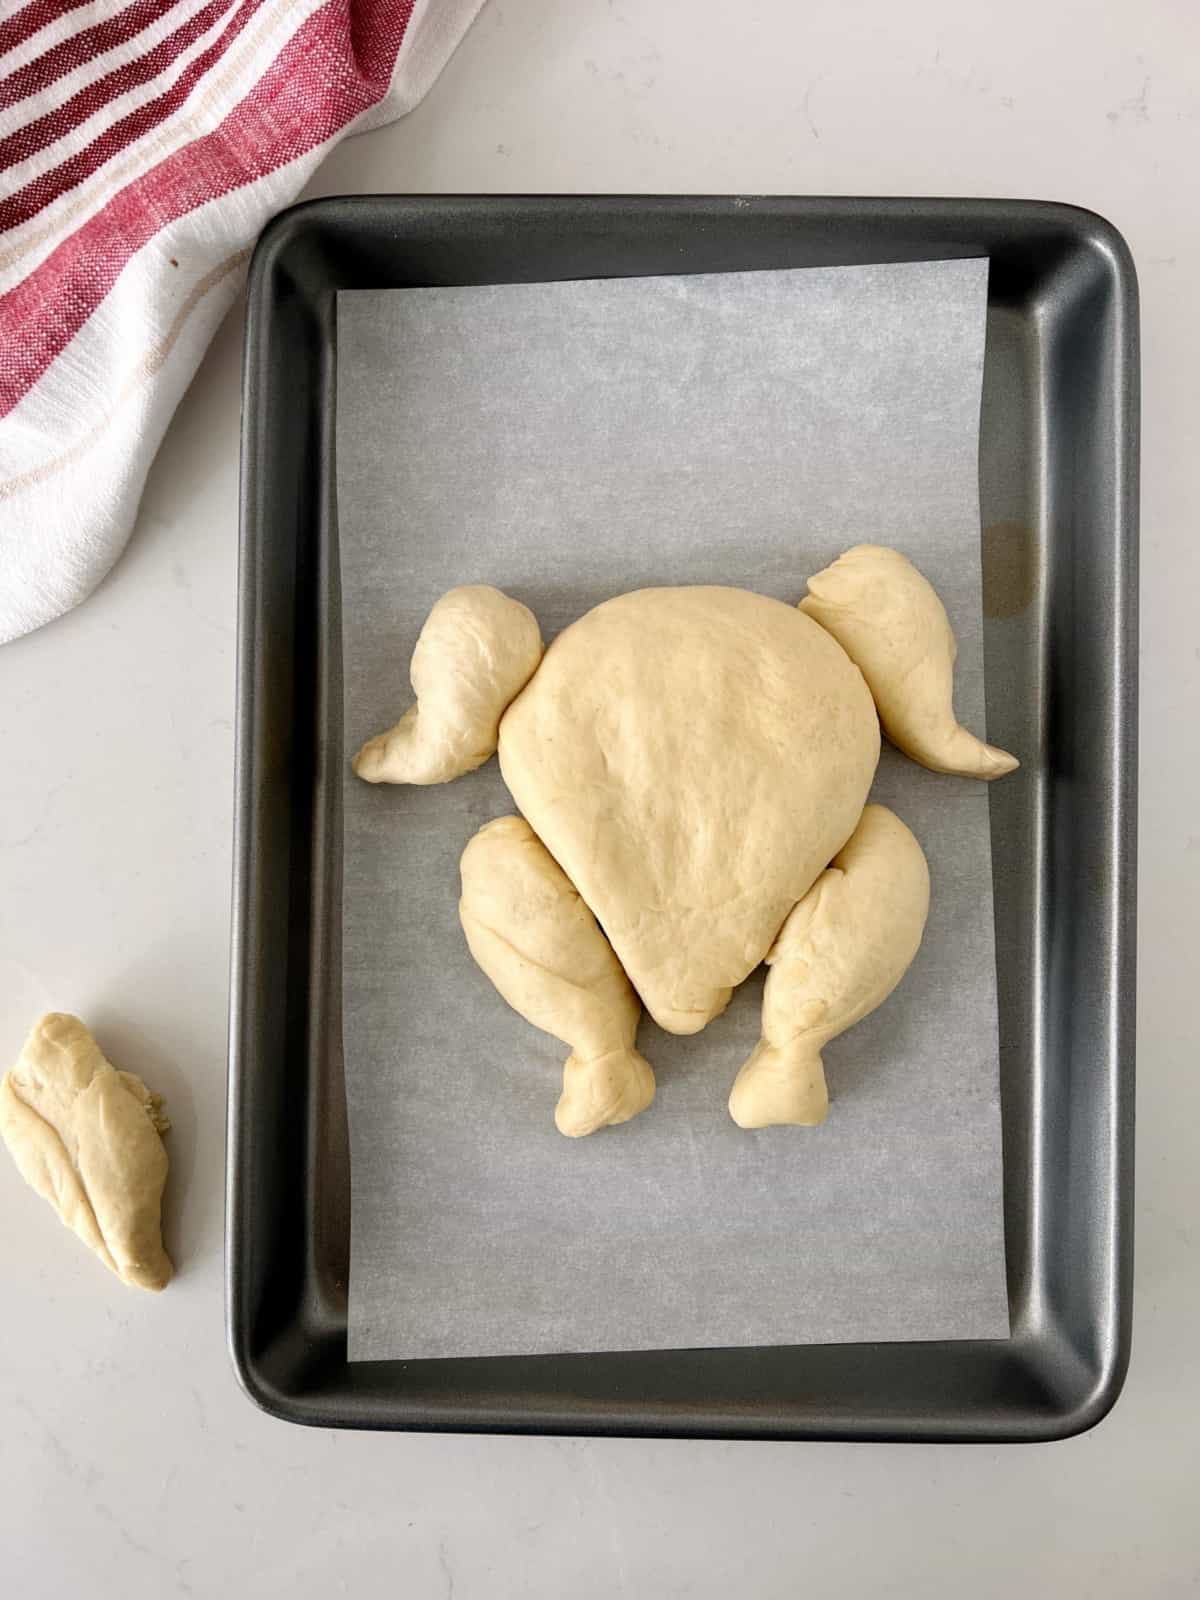 dough shaped like a turkey 